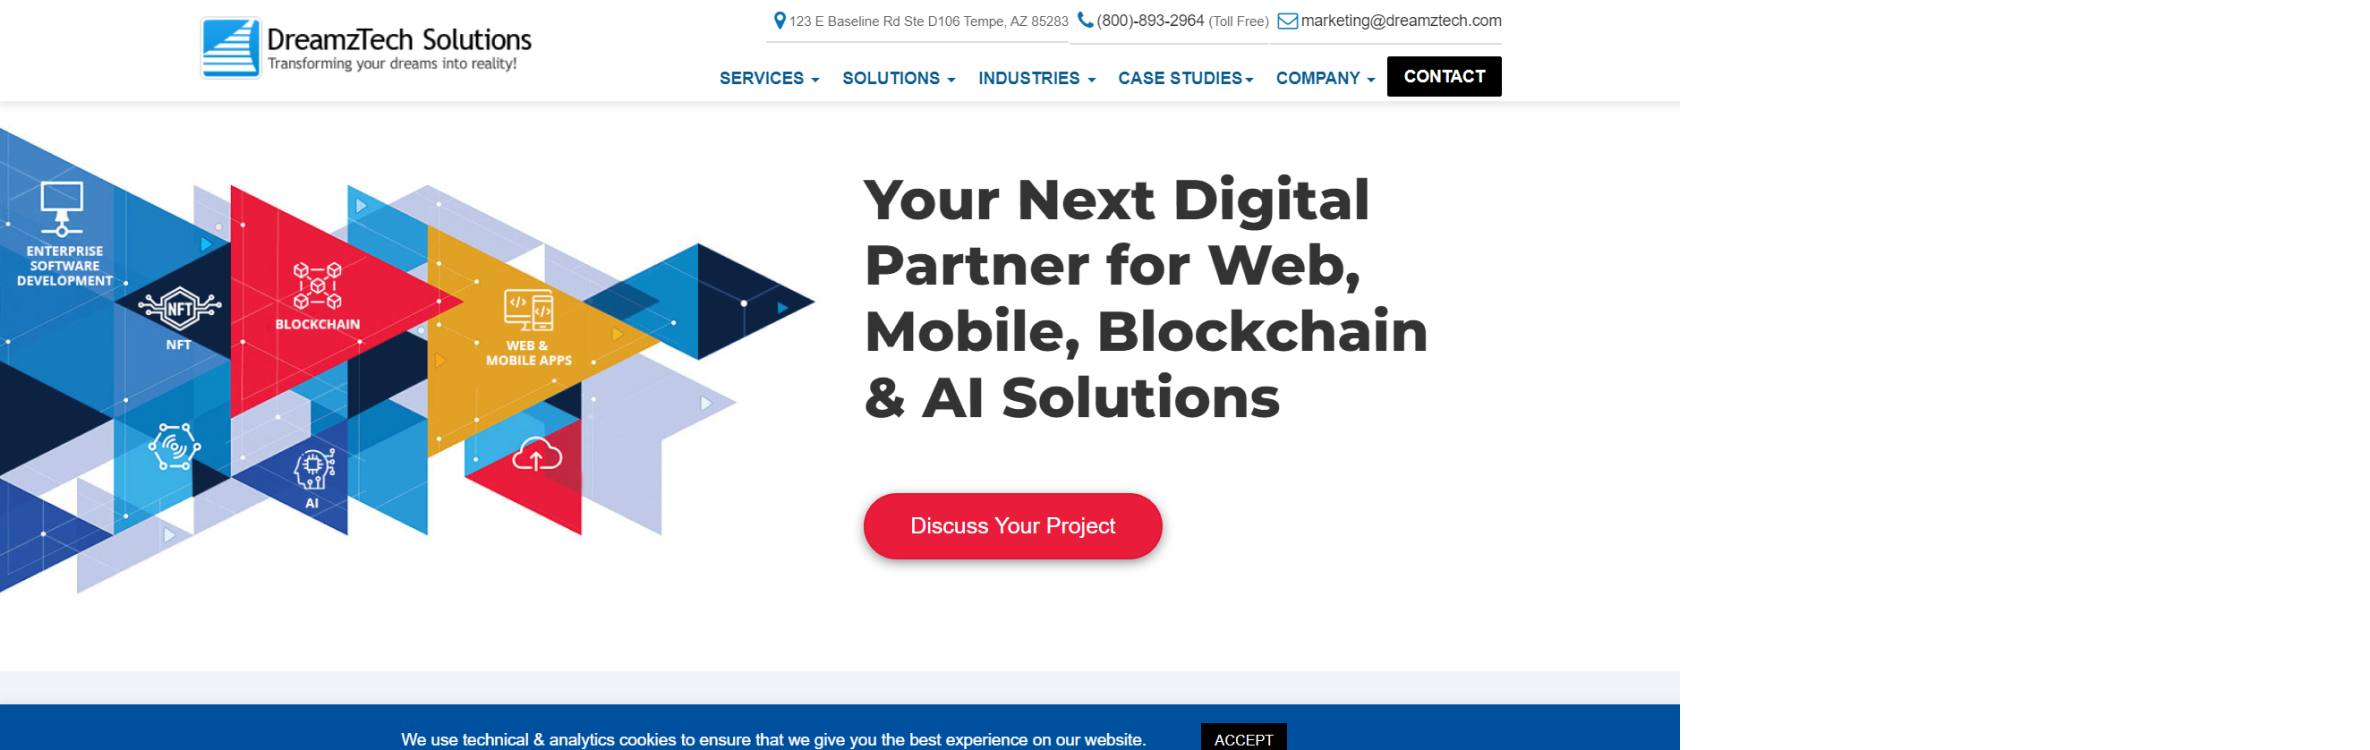 DreamzTech Solutions Inc